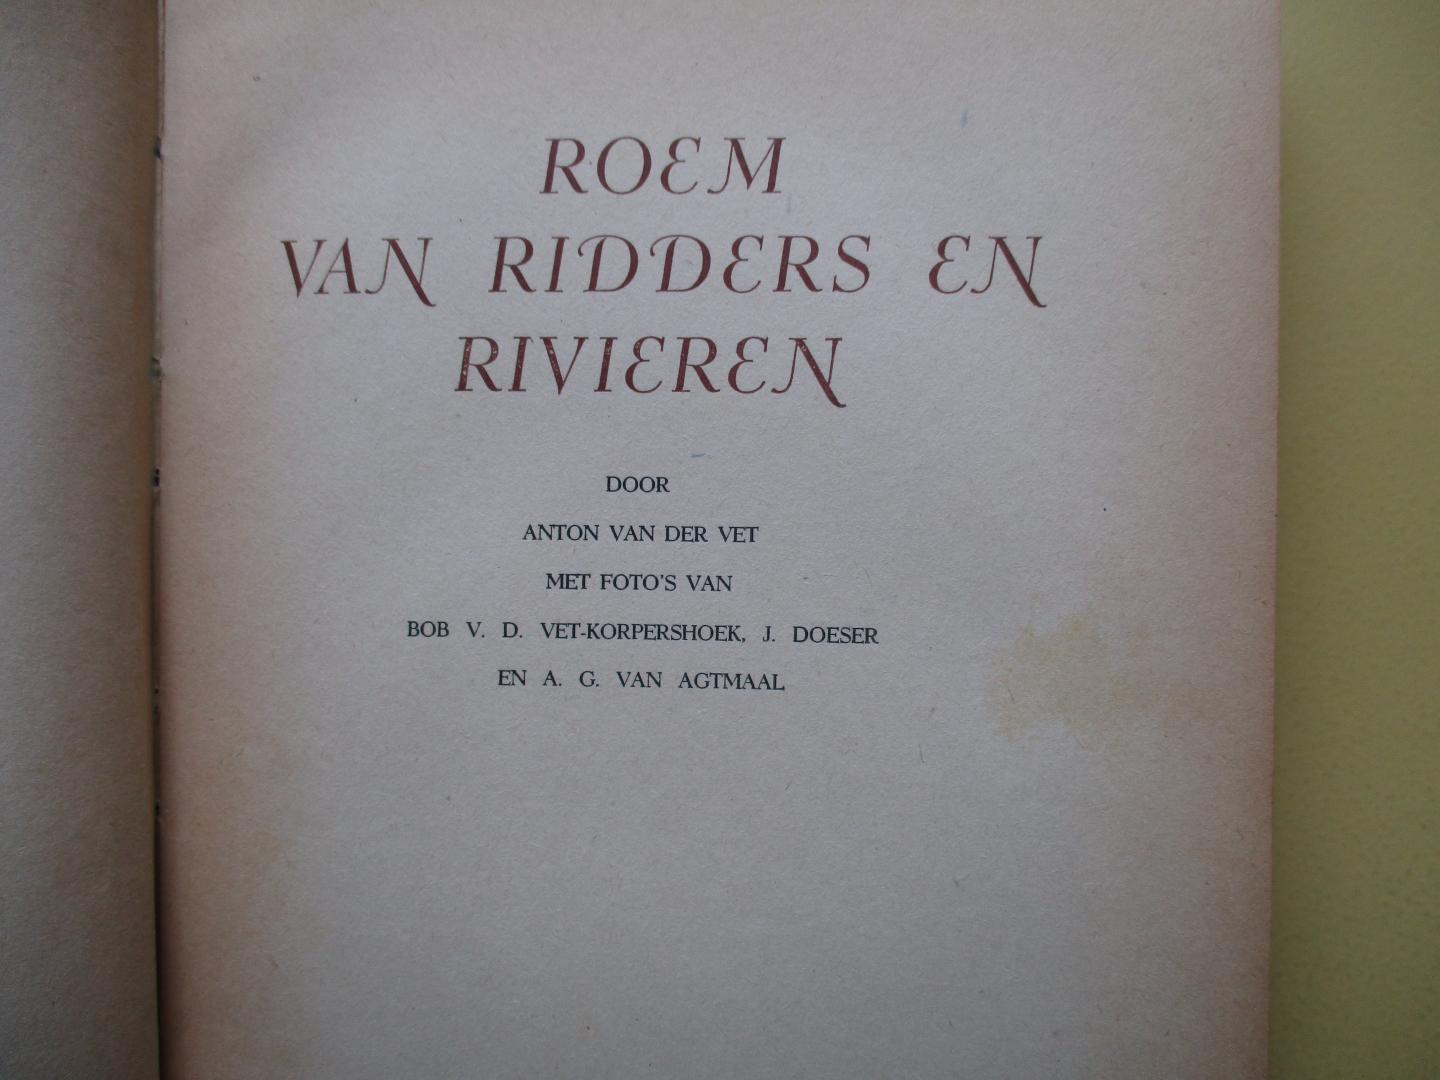 Vet, Anton van der - Roem van ridders en rivieren